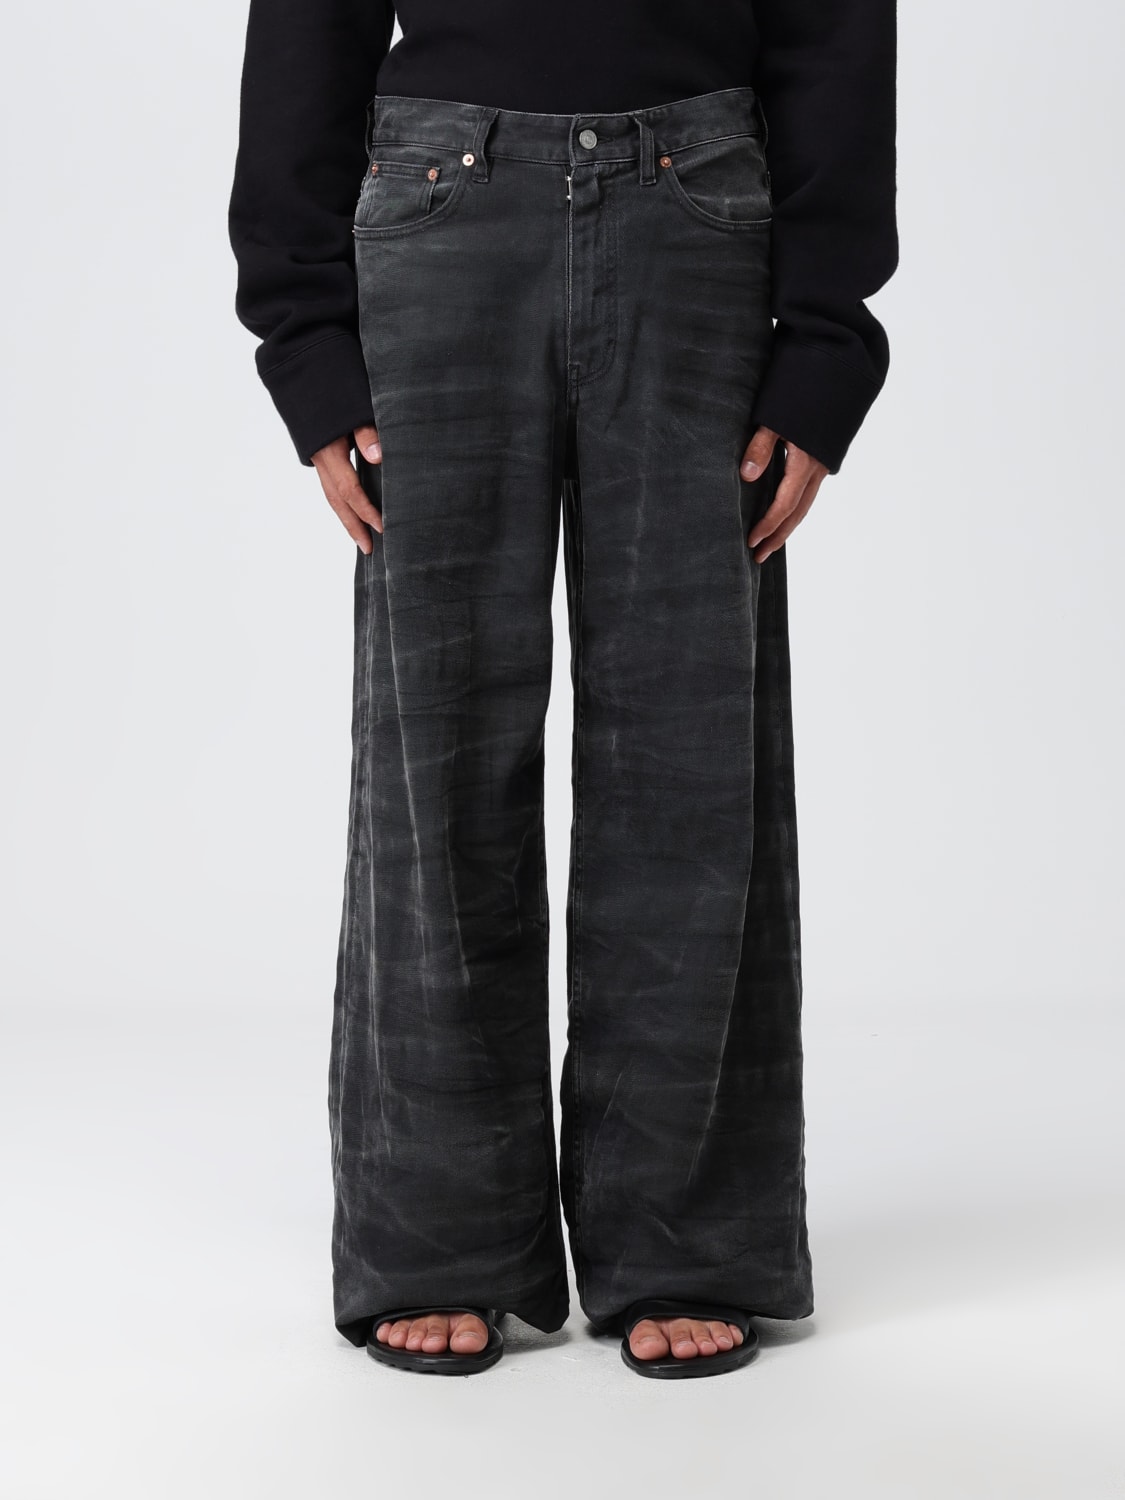 MM6 MAISON MARGIELA: jeans for man - Black | Mm6 Maison Margiela jeans ...